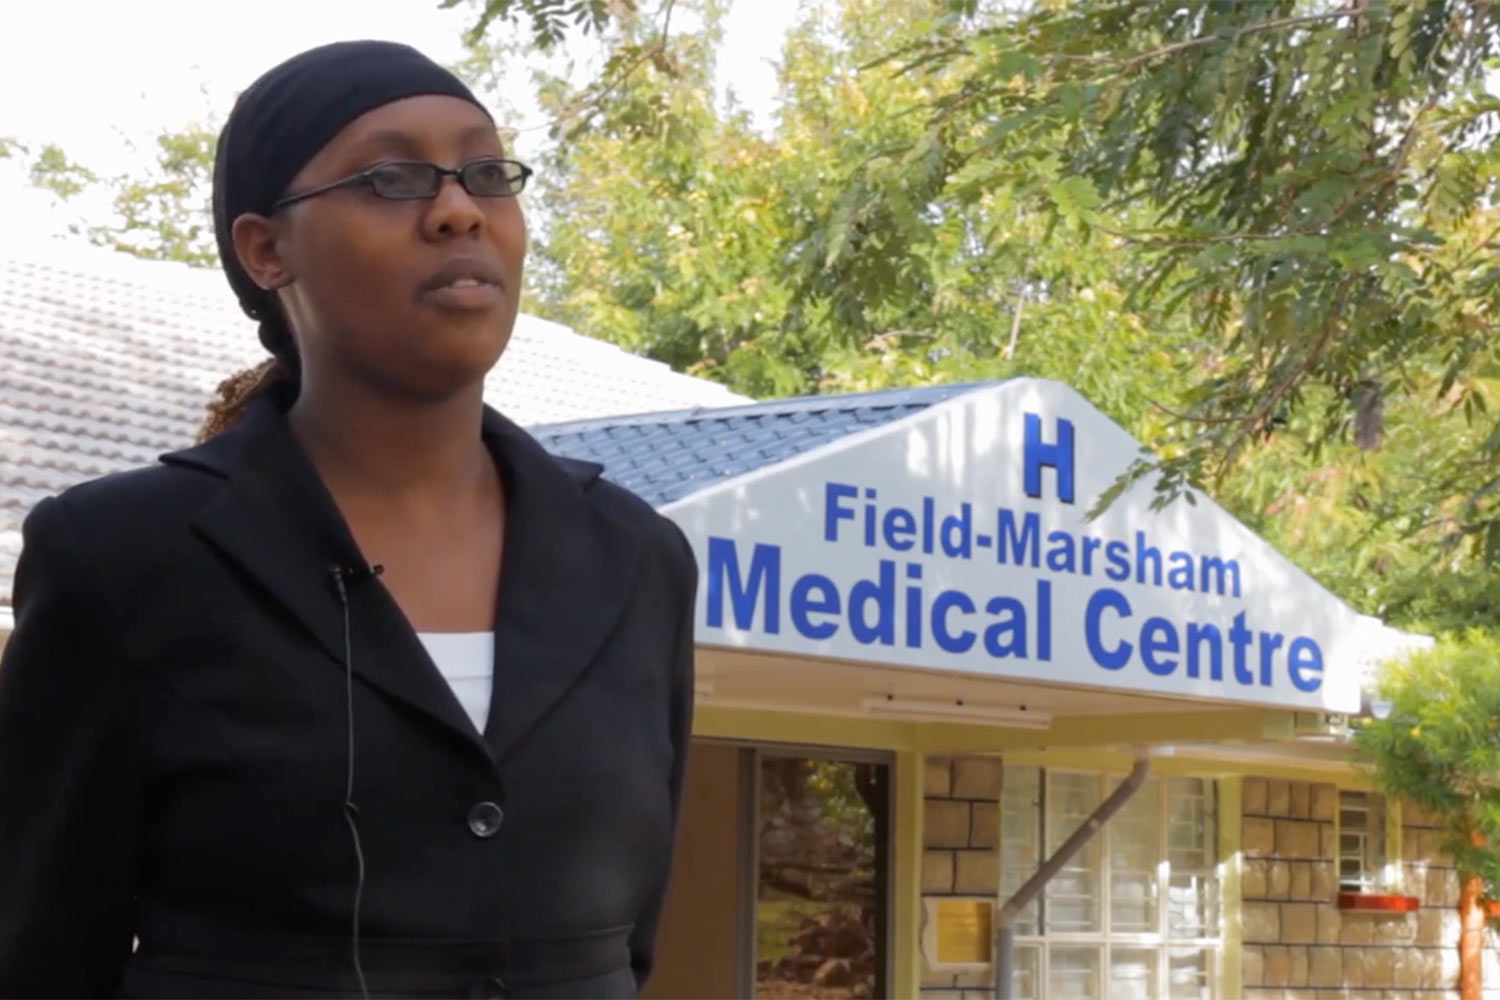 Field-Marsham Medical Centre